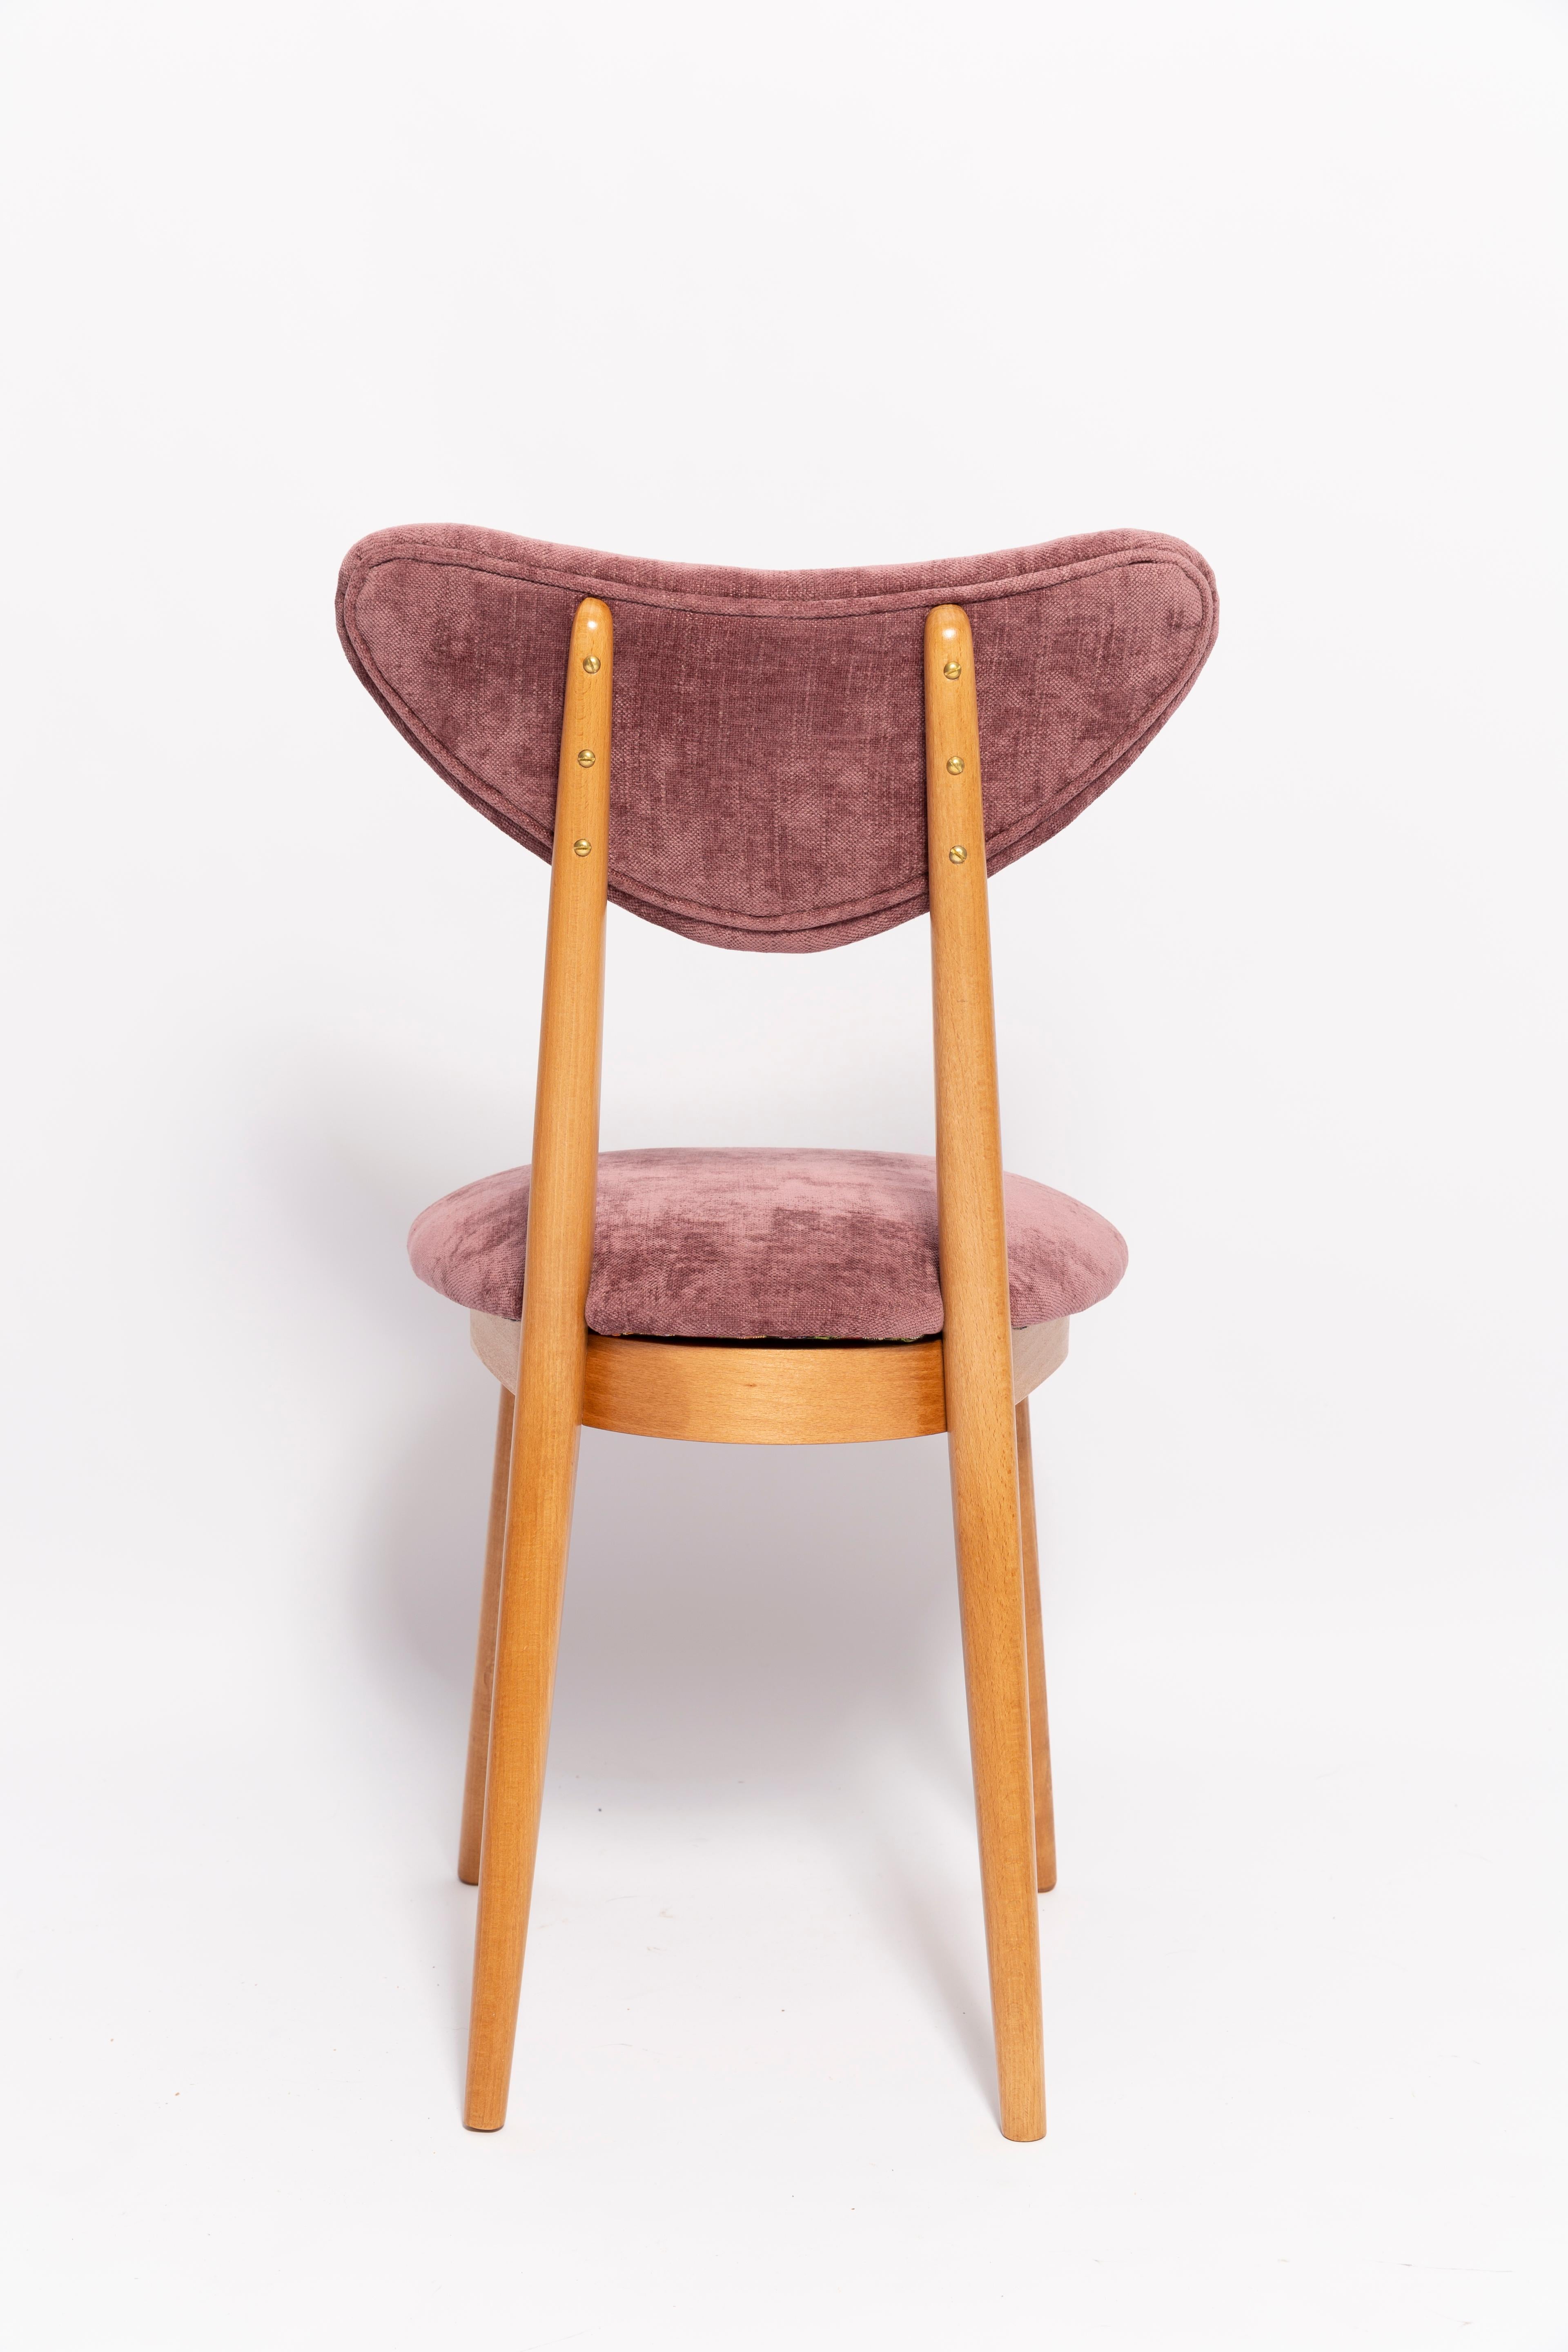 Midcentury Plum Violet Velvet, Light Wood Heart Chair, Europe, 1960s For Sale 4